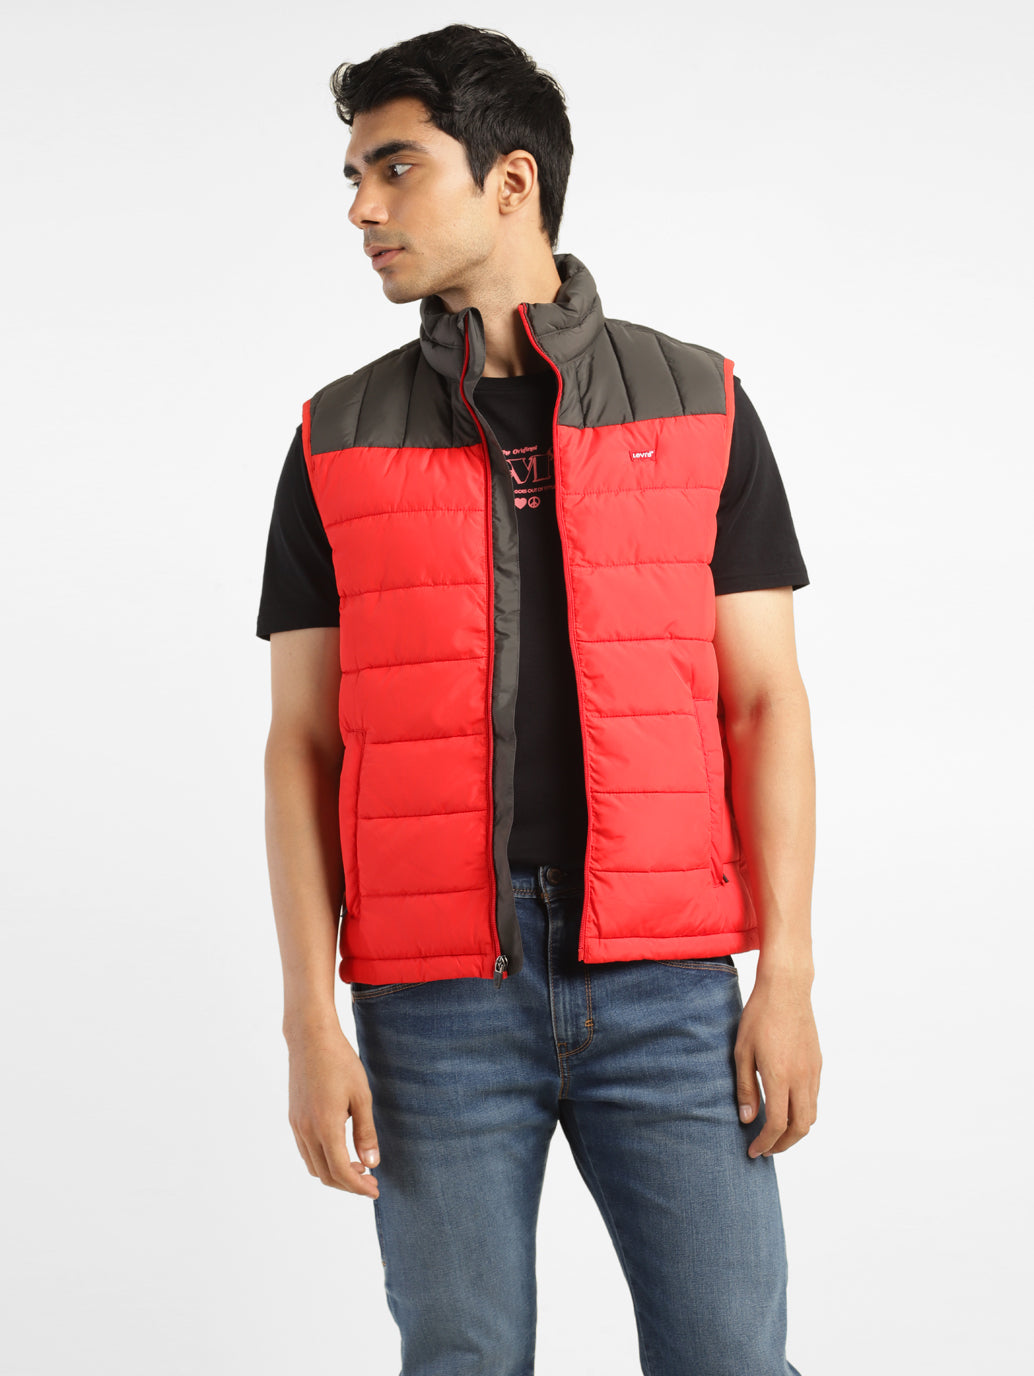 Men's Solid Red Mandarin Collar Jacket